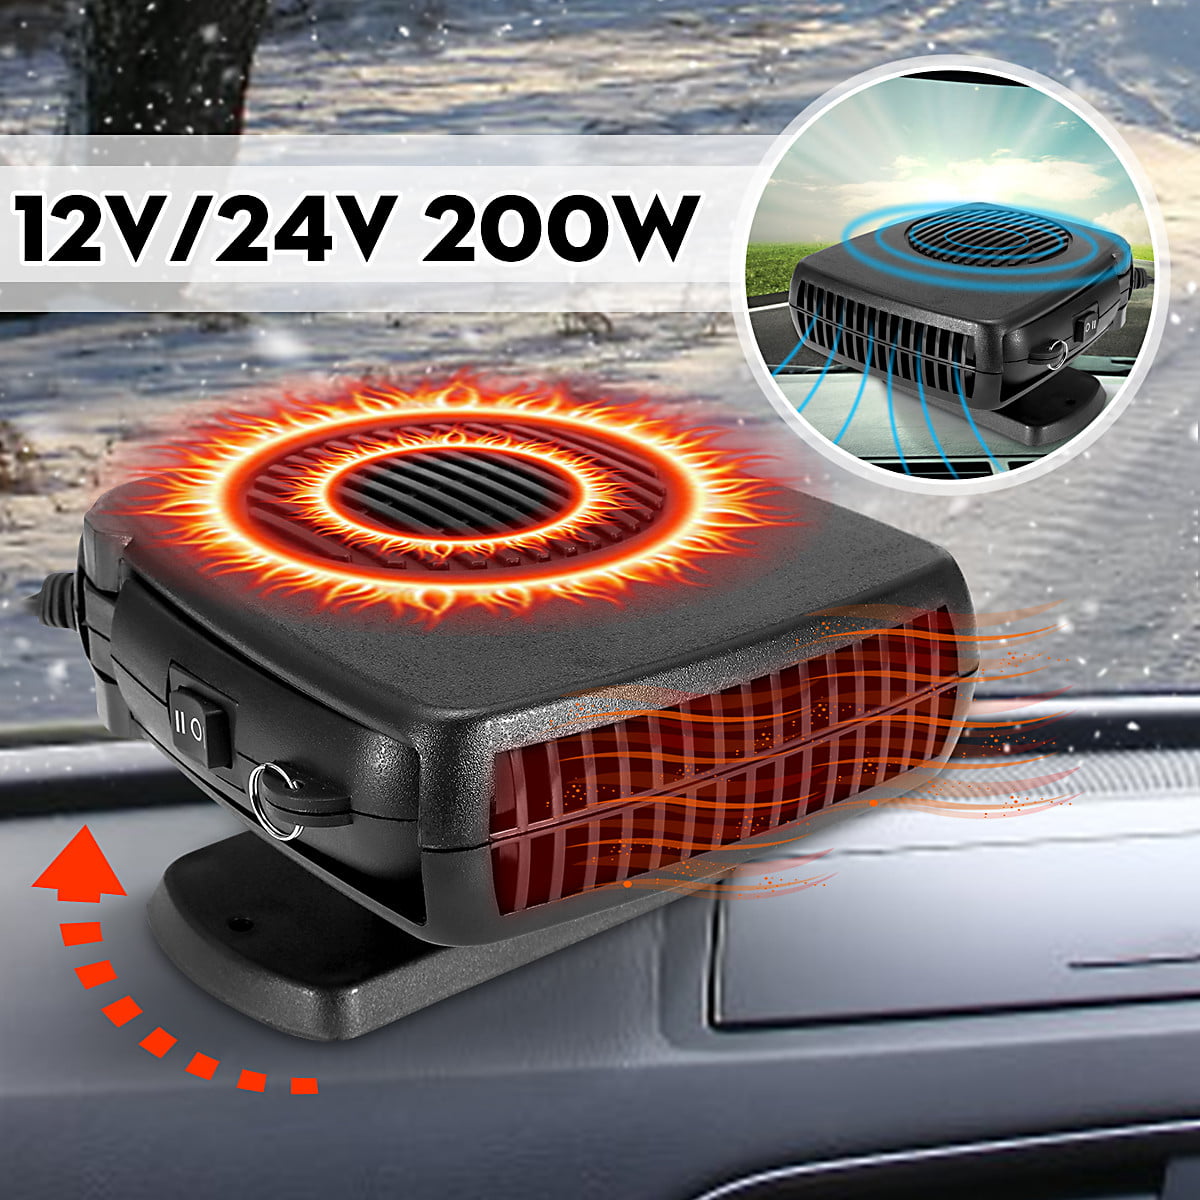 12V Car Vehicle Ceramic Heater Heating Cooling Fan Defroster Demister Portable 